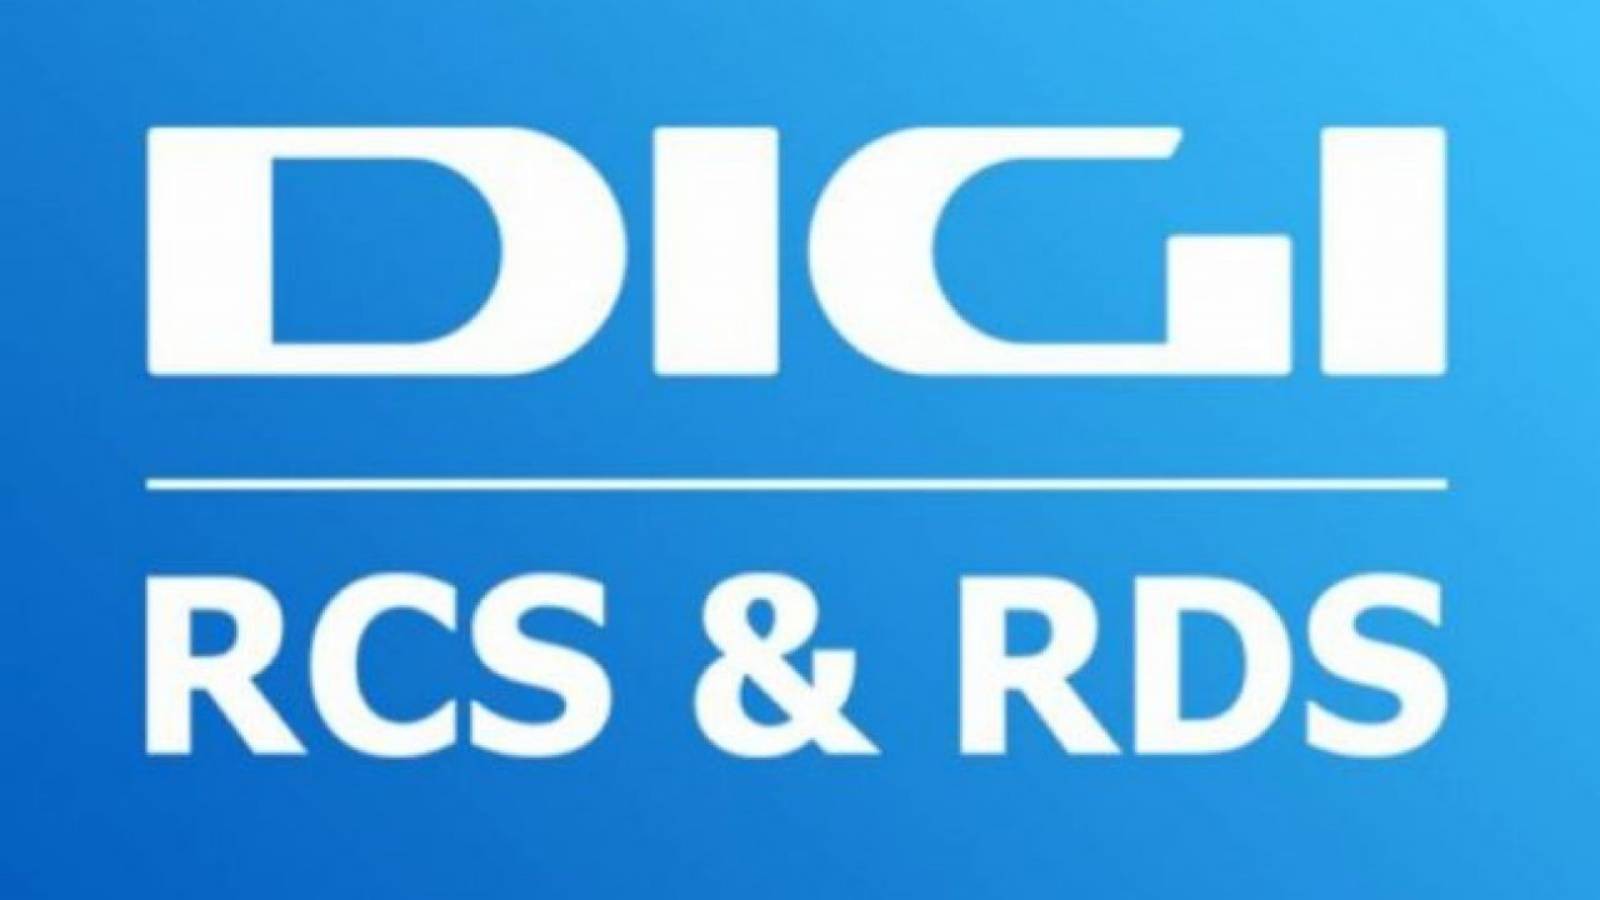 DIGI RCS & RDS FREE Heure officielle Mois Jours Clients Roumanie